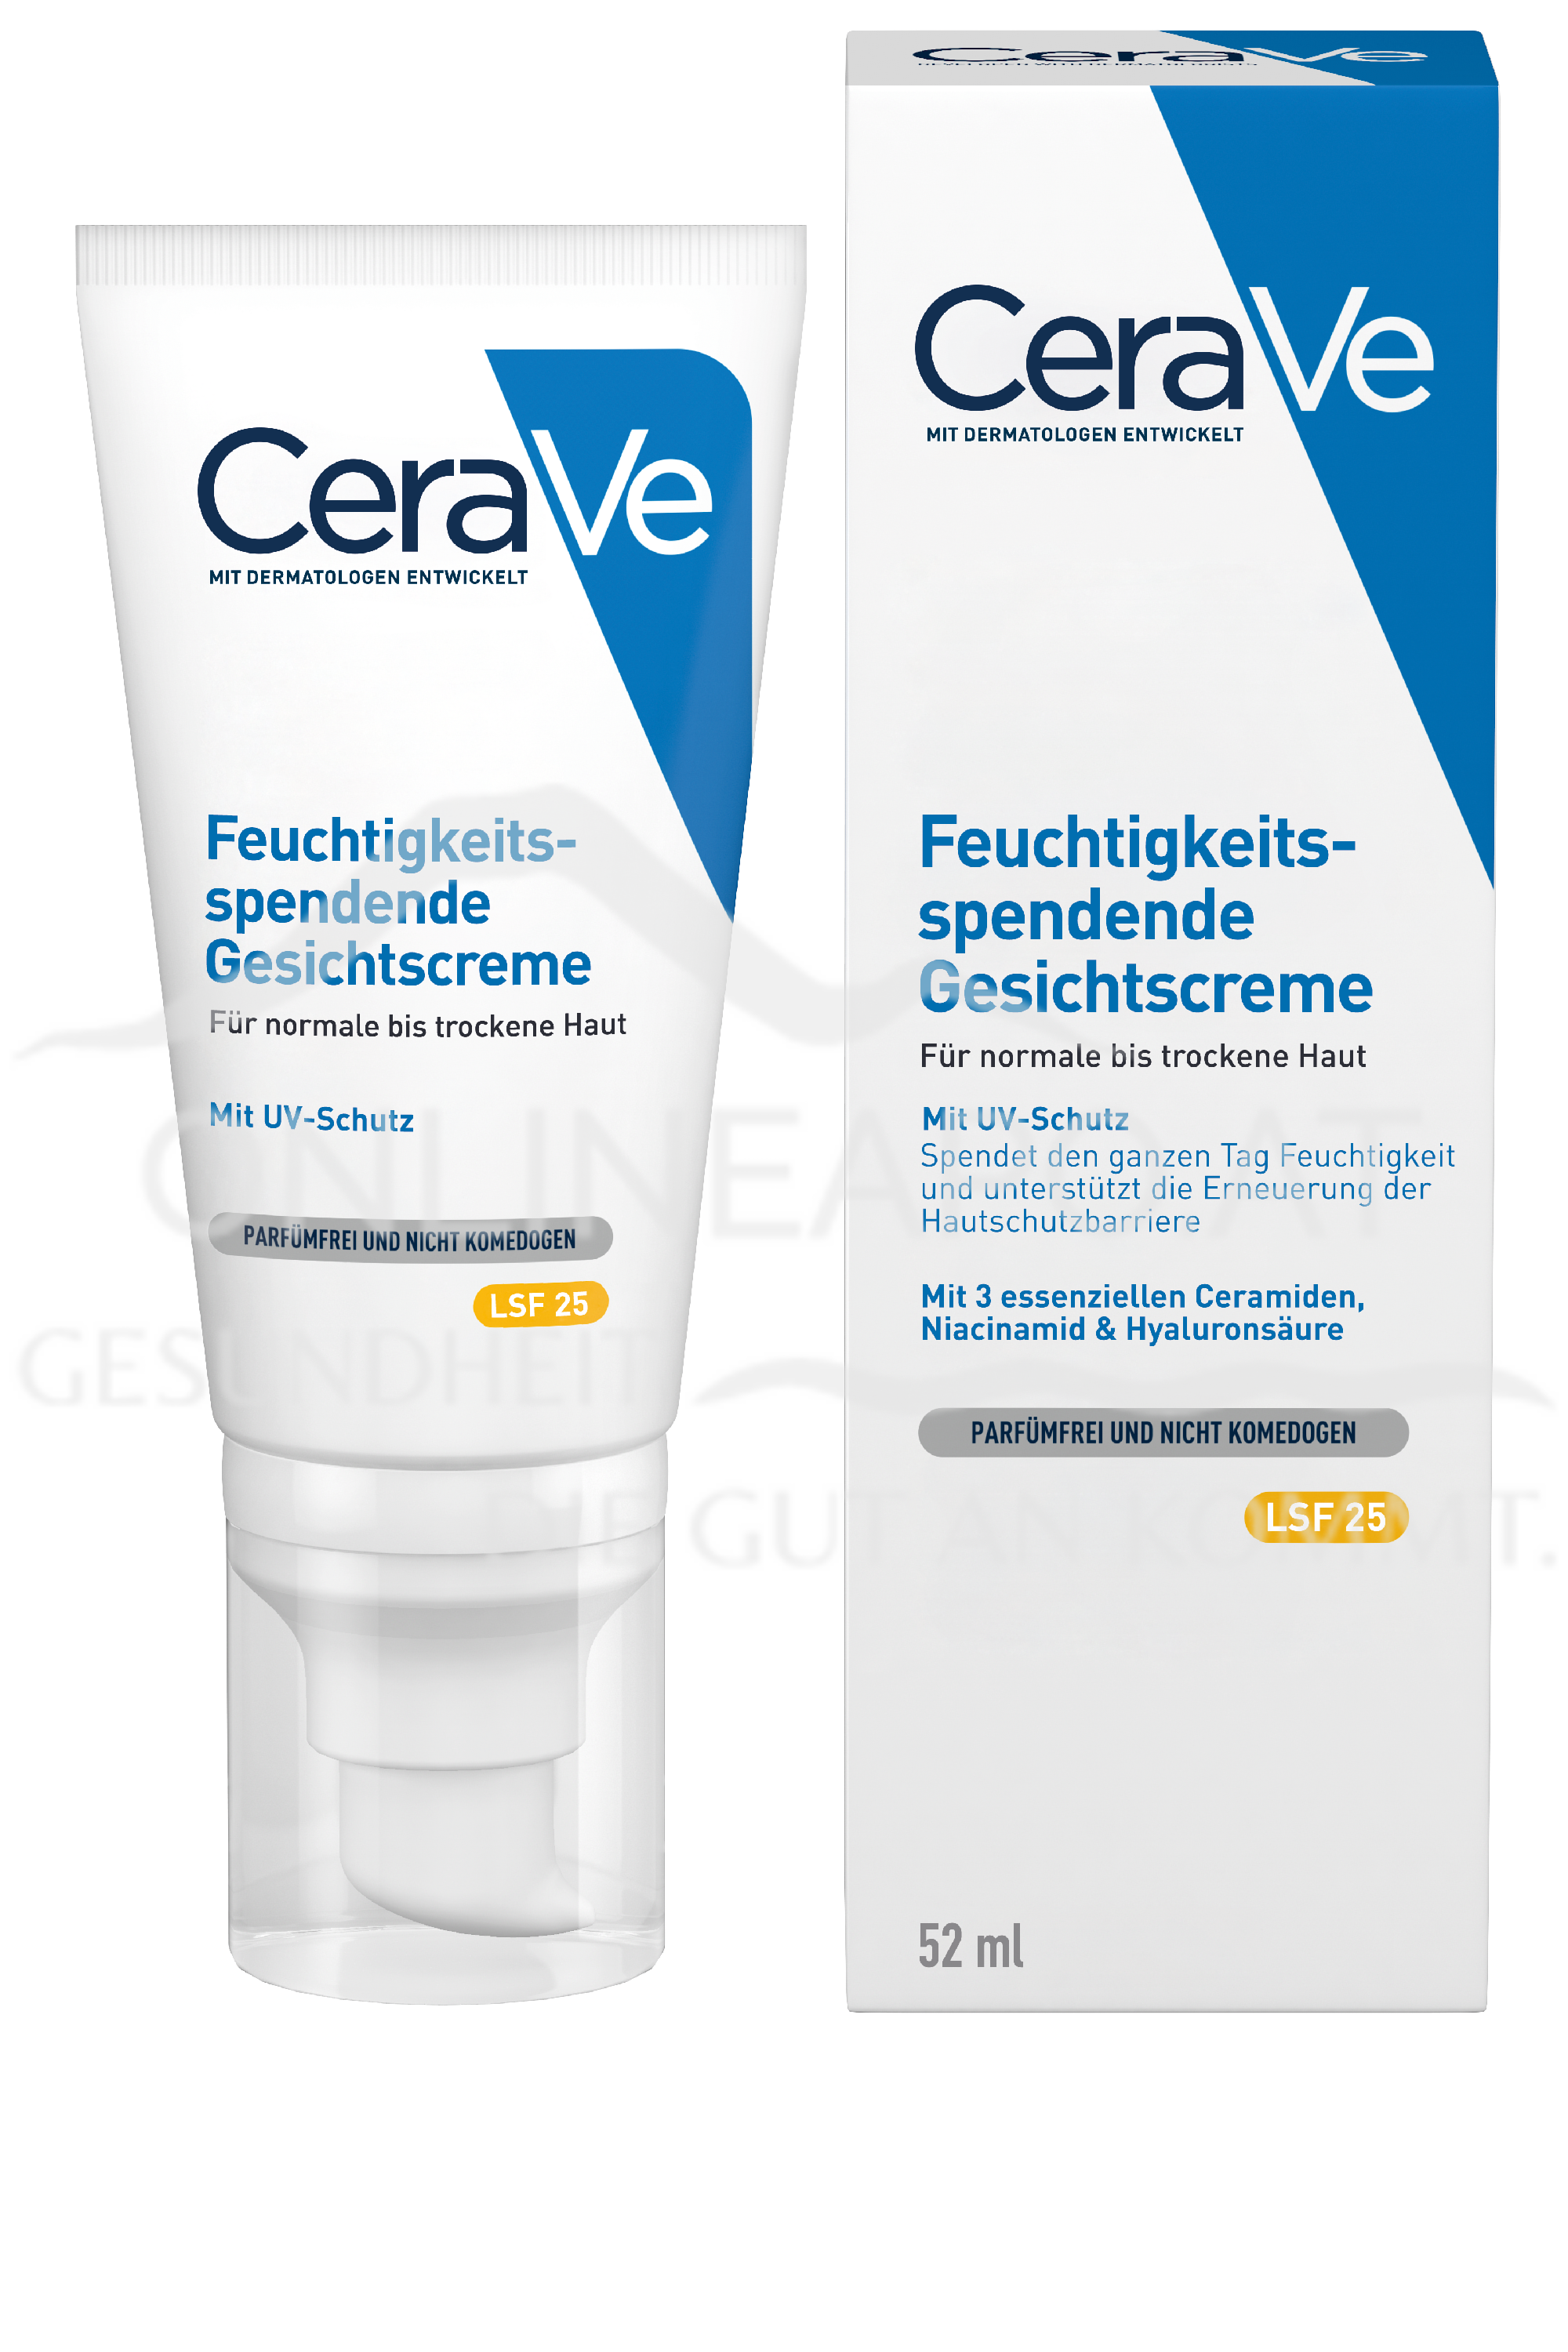 CeraVe Feuchtigkeitsspendende Gesichtscreme (LSF 25)